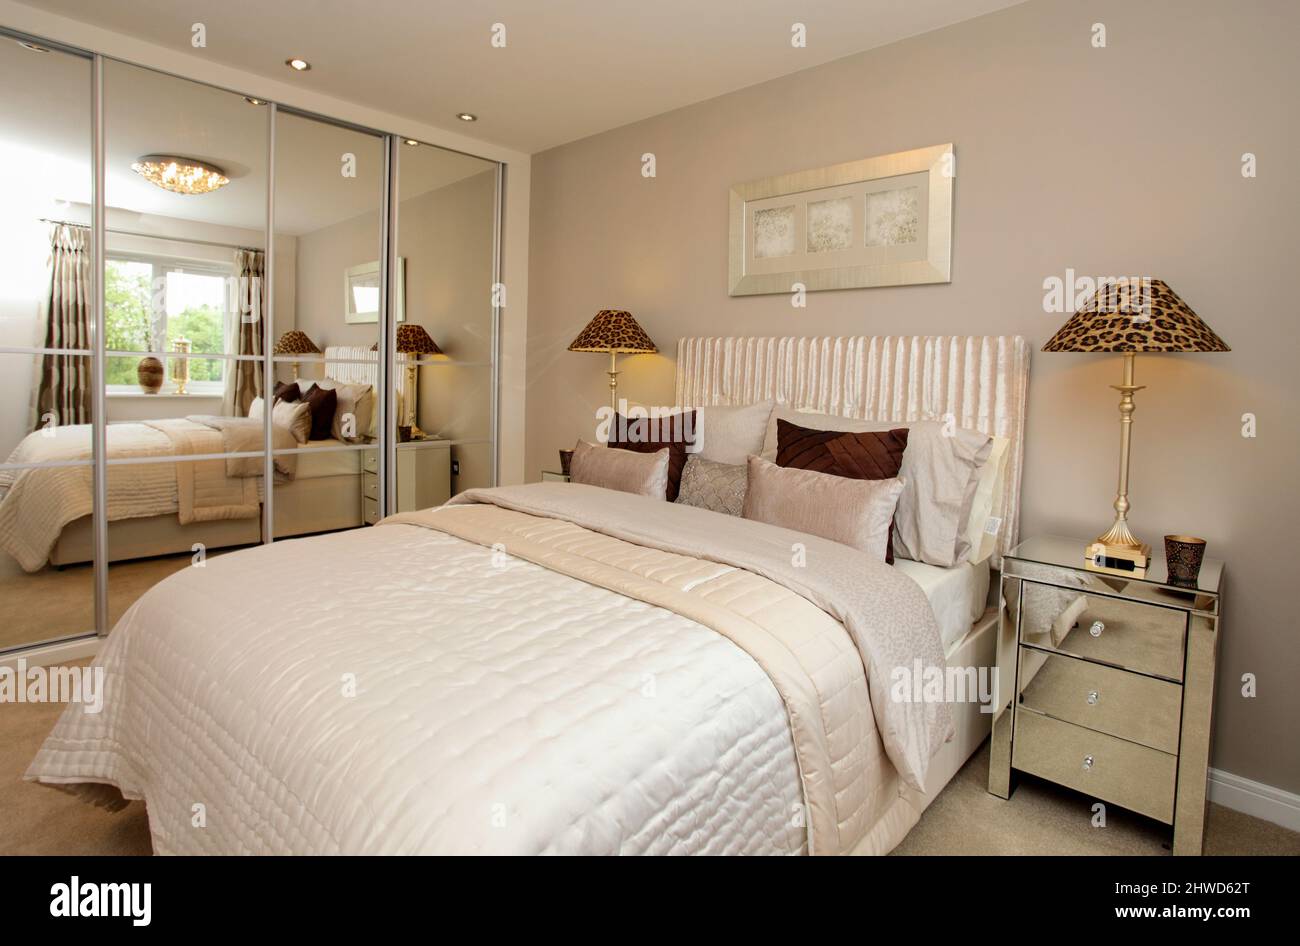 Dormitorio en esquema de colores neutros con armarios de espejo, colcha de cama en moderno showhome. Foto de stock